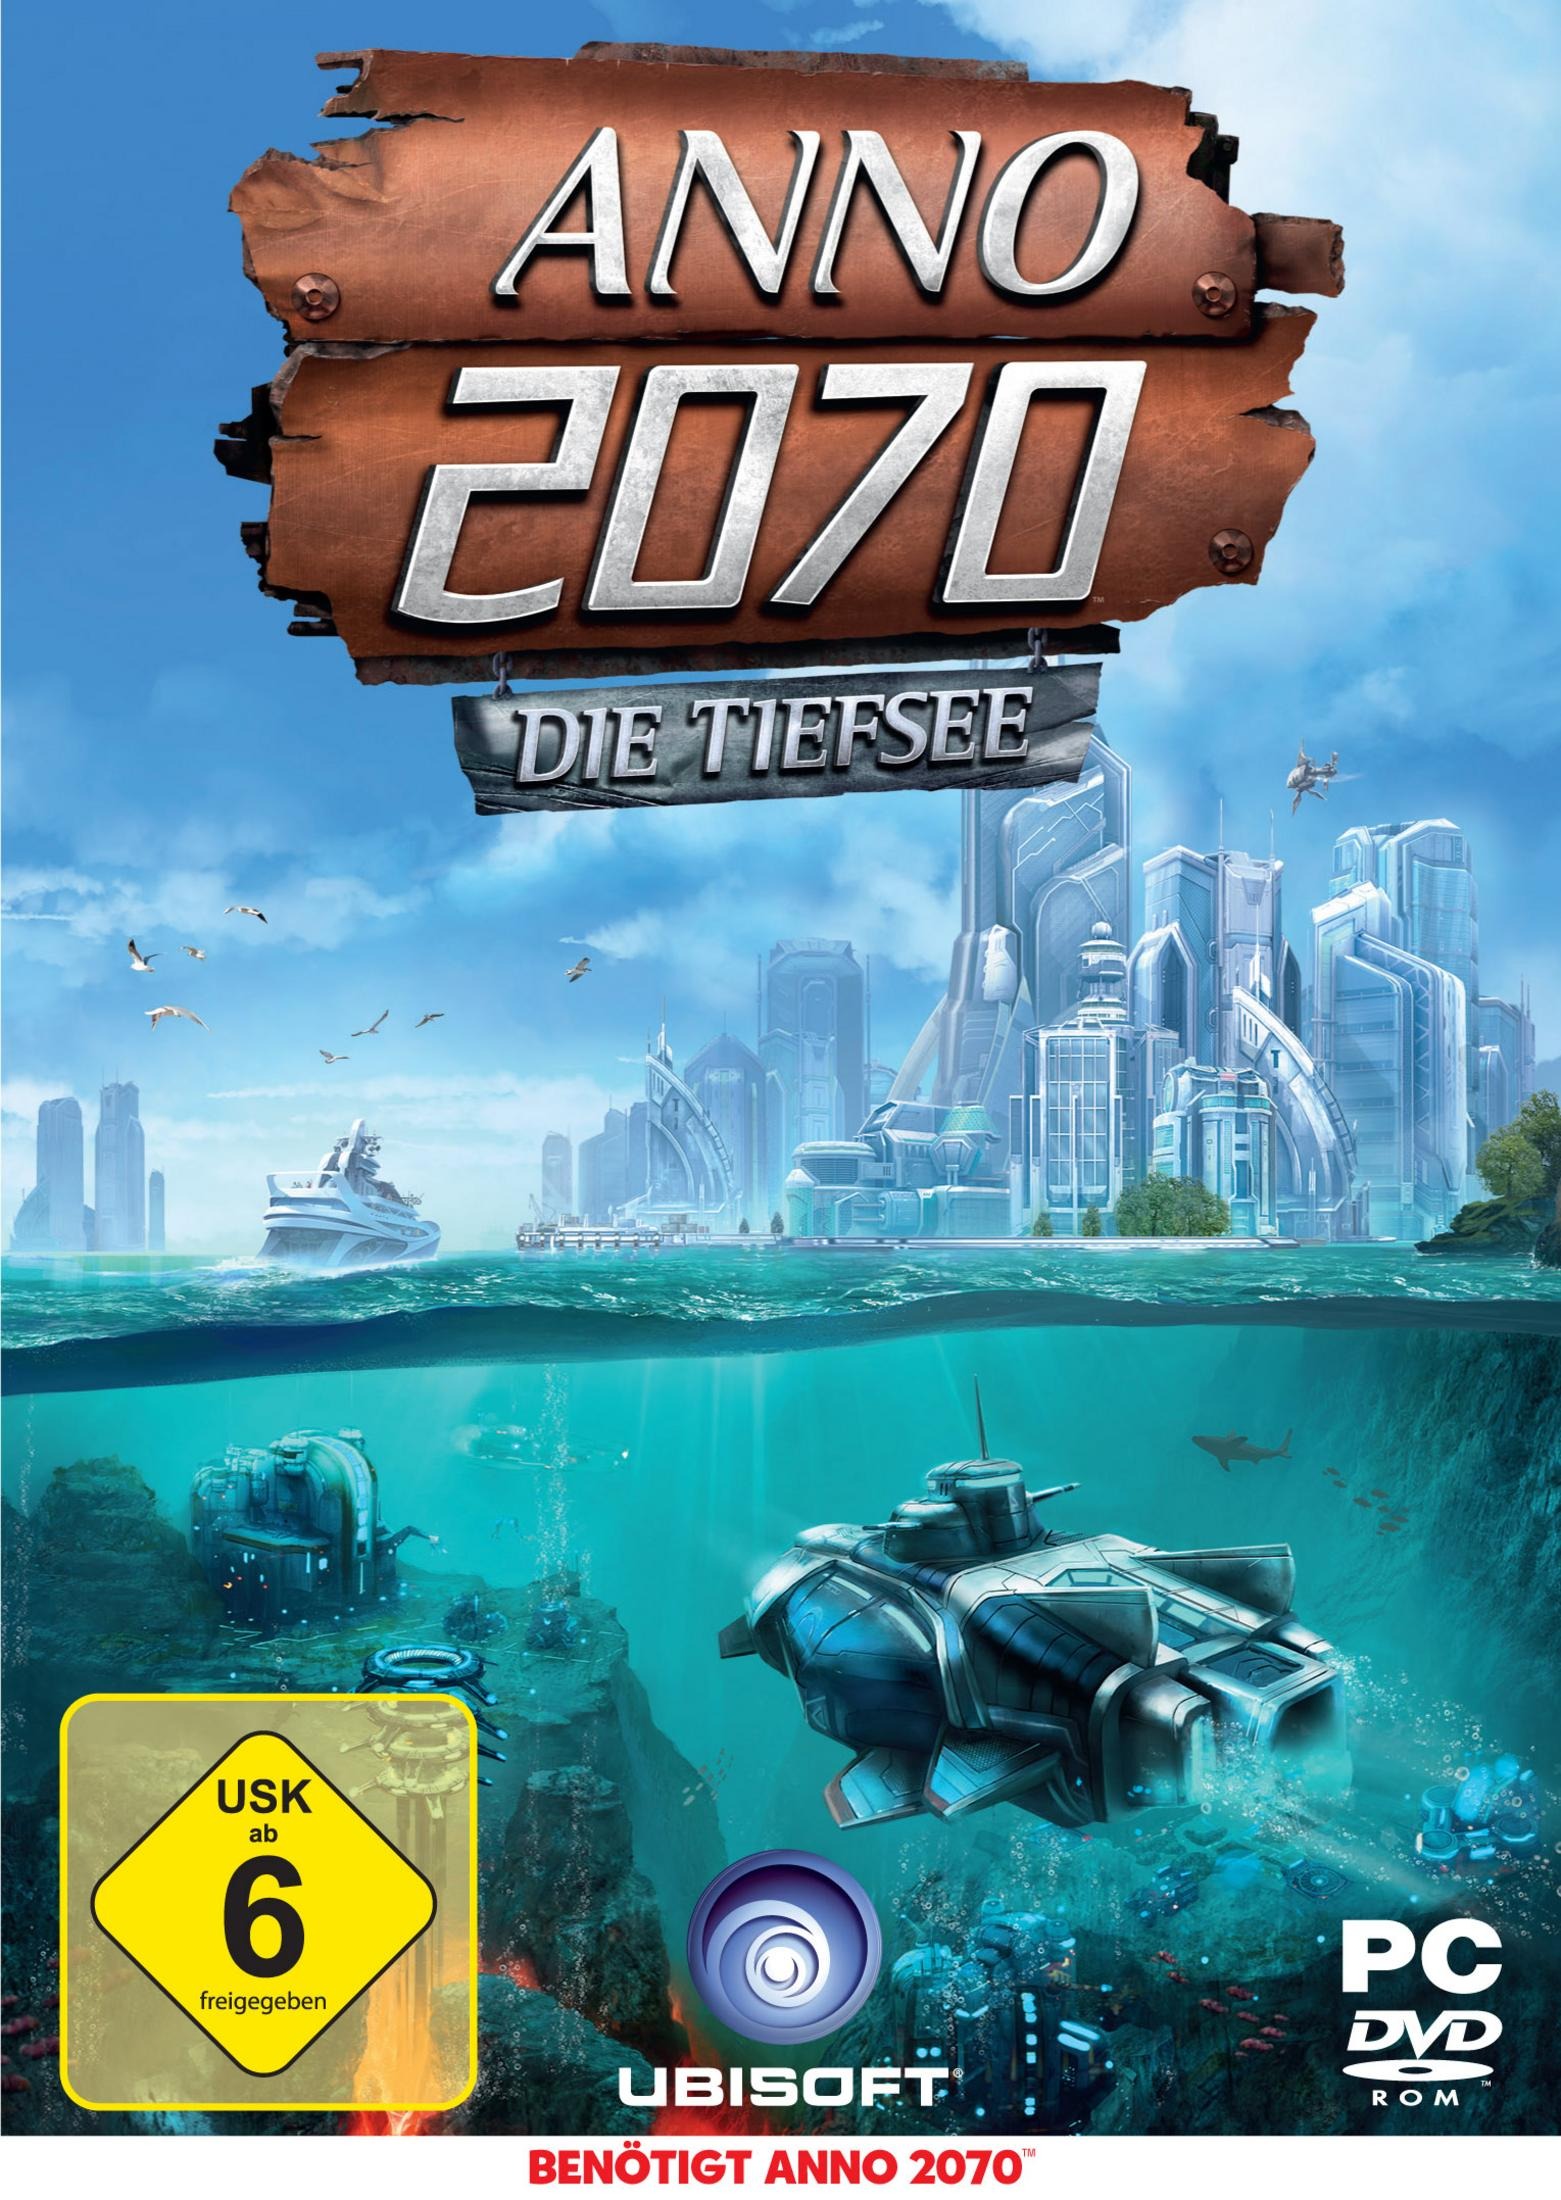 Anno 2070: [PC] Tiefsee - Die